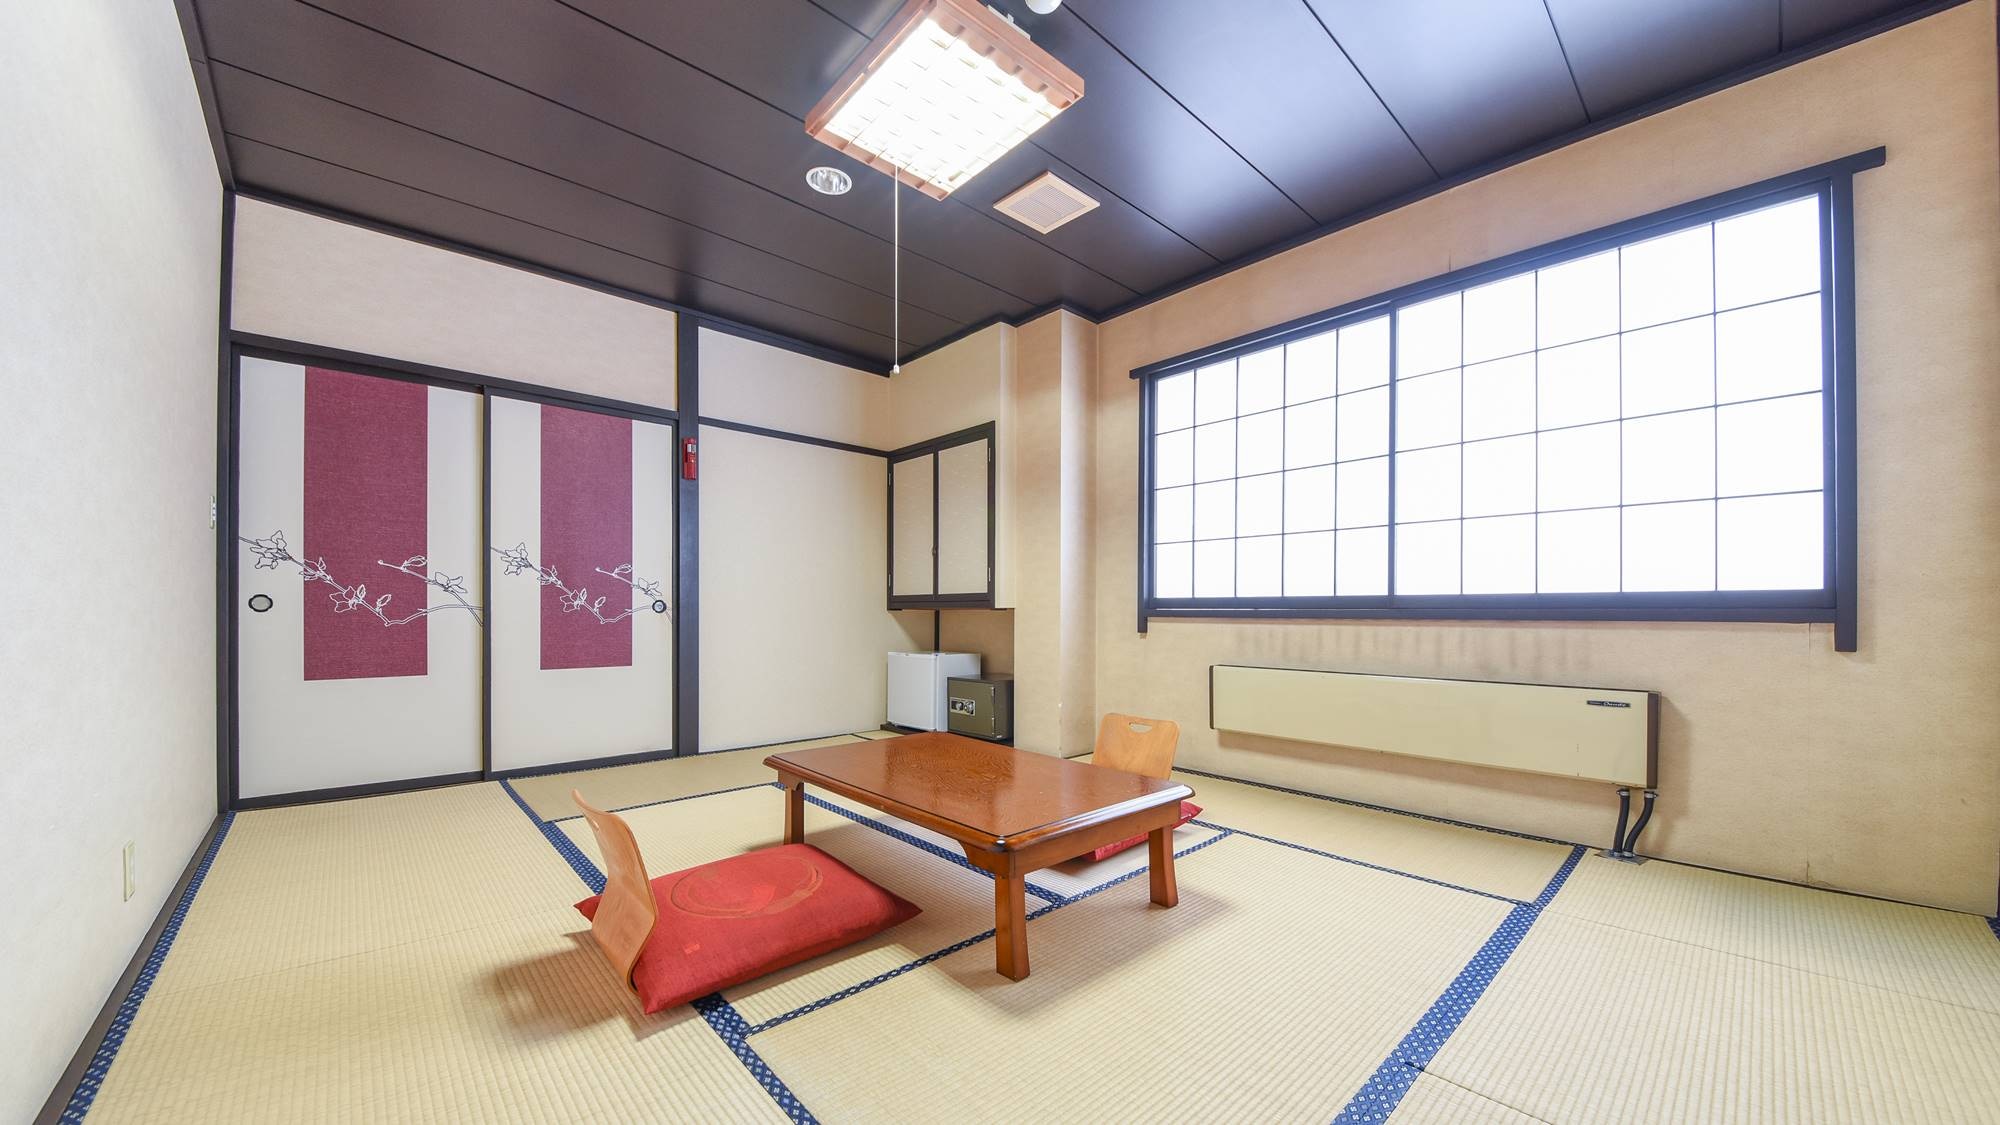 * ห้องสไตล์ญี่ปุ่น 10 เสื่อทาทามิ (ตัวอย่างห้องพัก) / สัญลักษณ์ Kusatsu & ldquo; Yubatake & rdquo; กรุณาพักผ่อนในห้องด้านข้าง